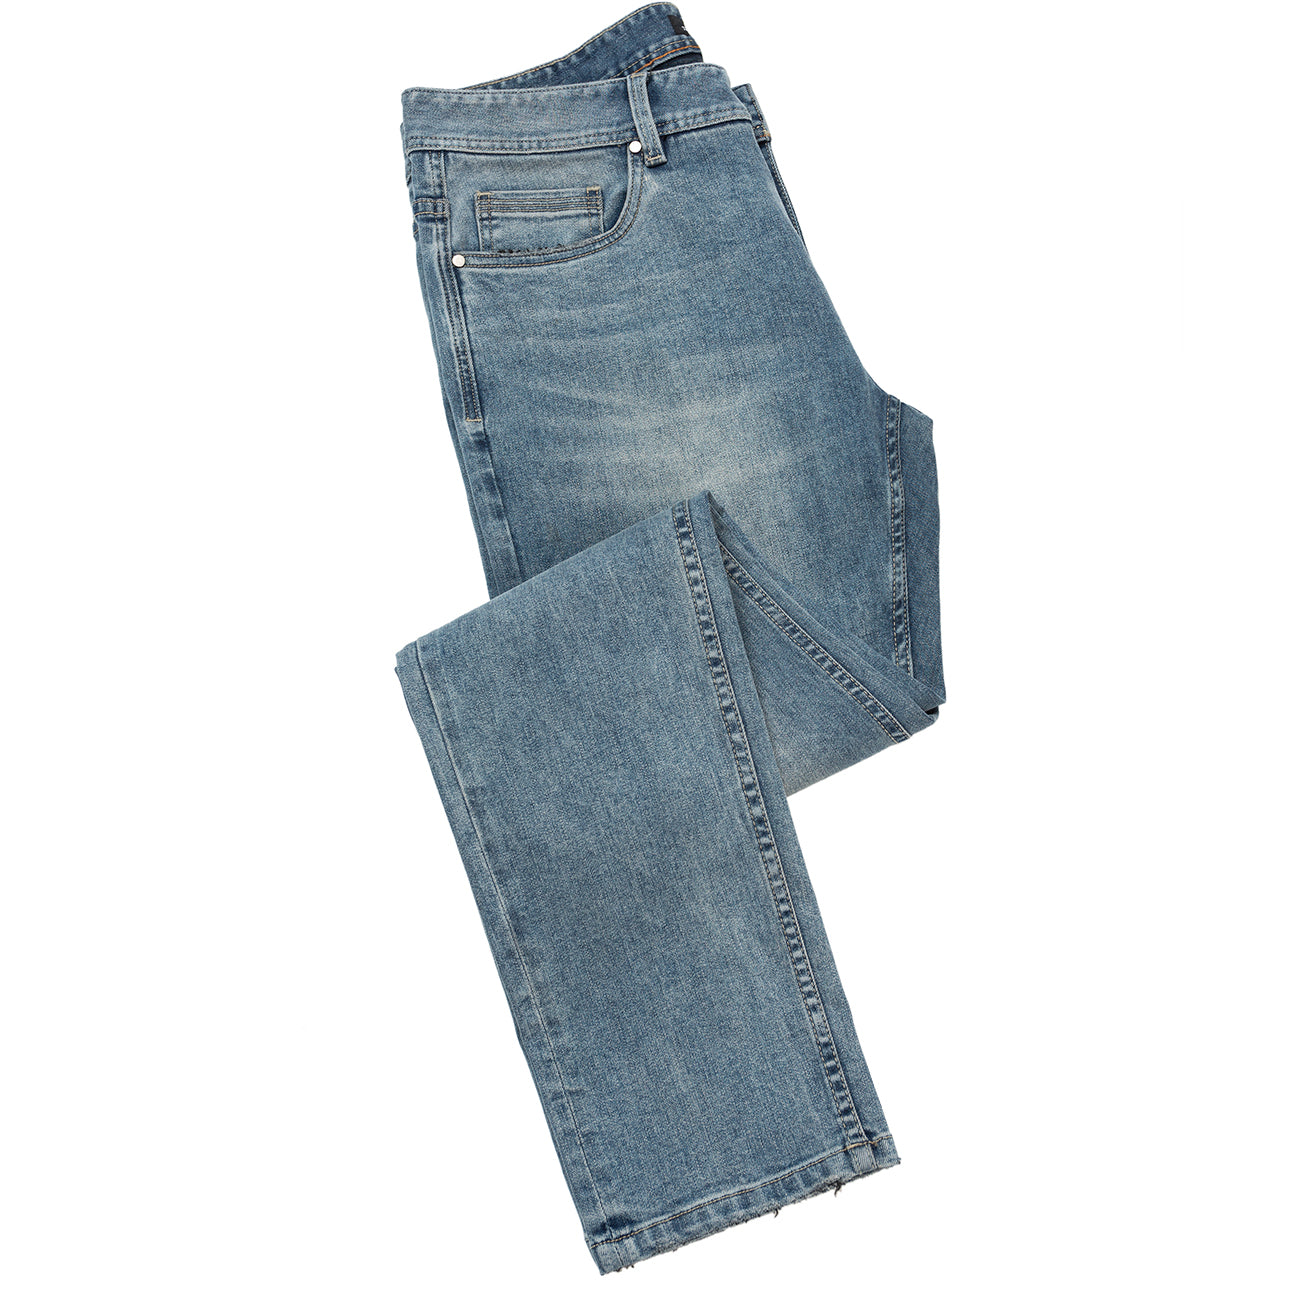 Stretch Denim Jean With 5 Pocket Styling